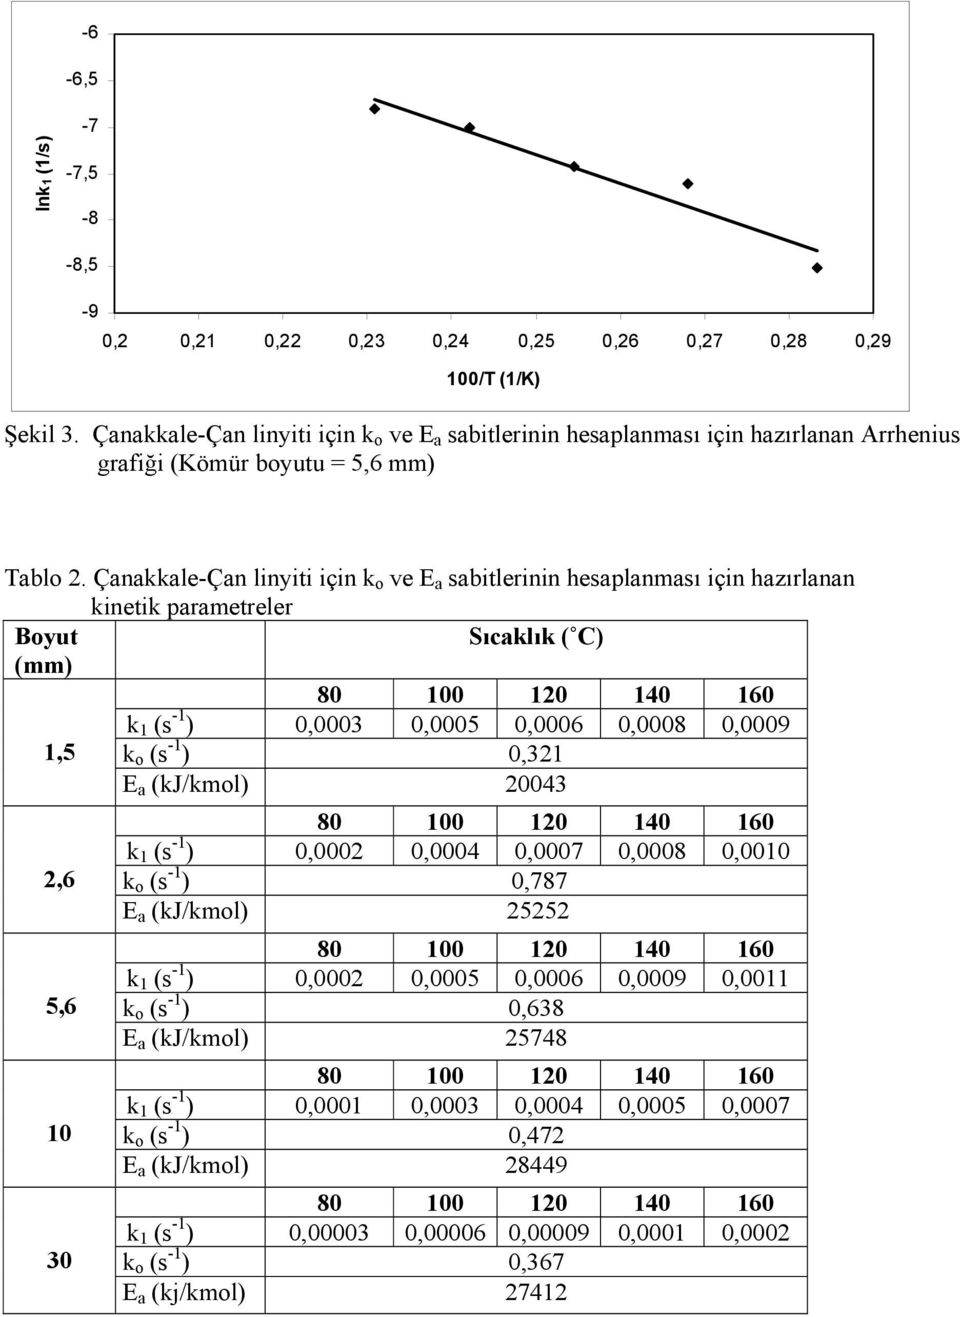 Çanakkale-Çan linyiti için k o ve E a sabitlerinin hesaplanması için hazırlanan kinetik parametreler Boyut Sıcaklık ( C) (mm) k 1 (s -1 ) 0,0003 0,0005 0,0006 0,0008 0,0009 1,5 k o (s -1 ) 0,321 E a